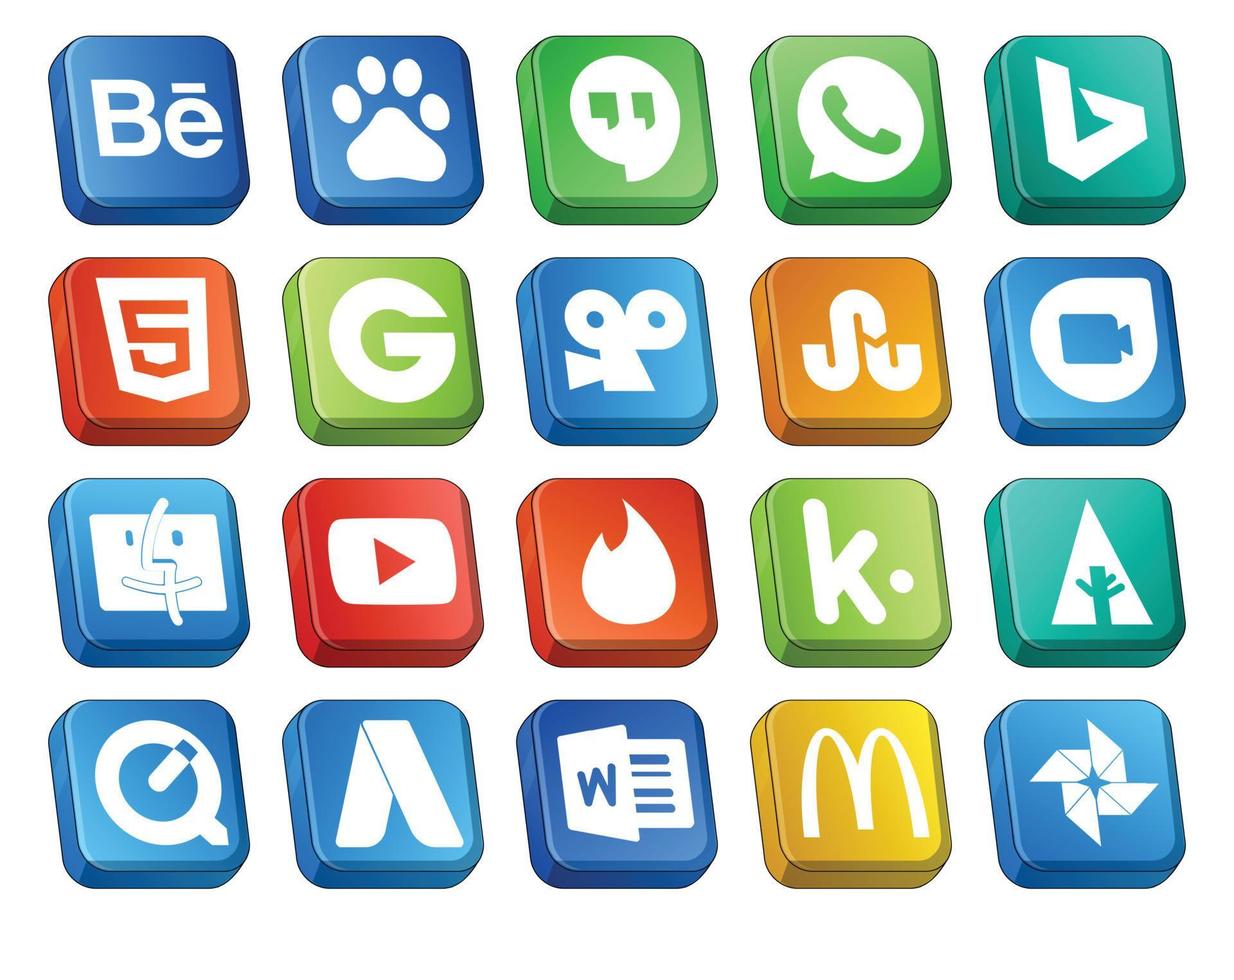 20 Symbolpakete für soziale Medien, einschließlich Adwords Forrst Stumbleupon Kik-Video vektor